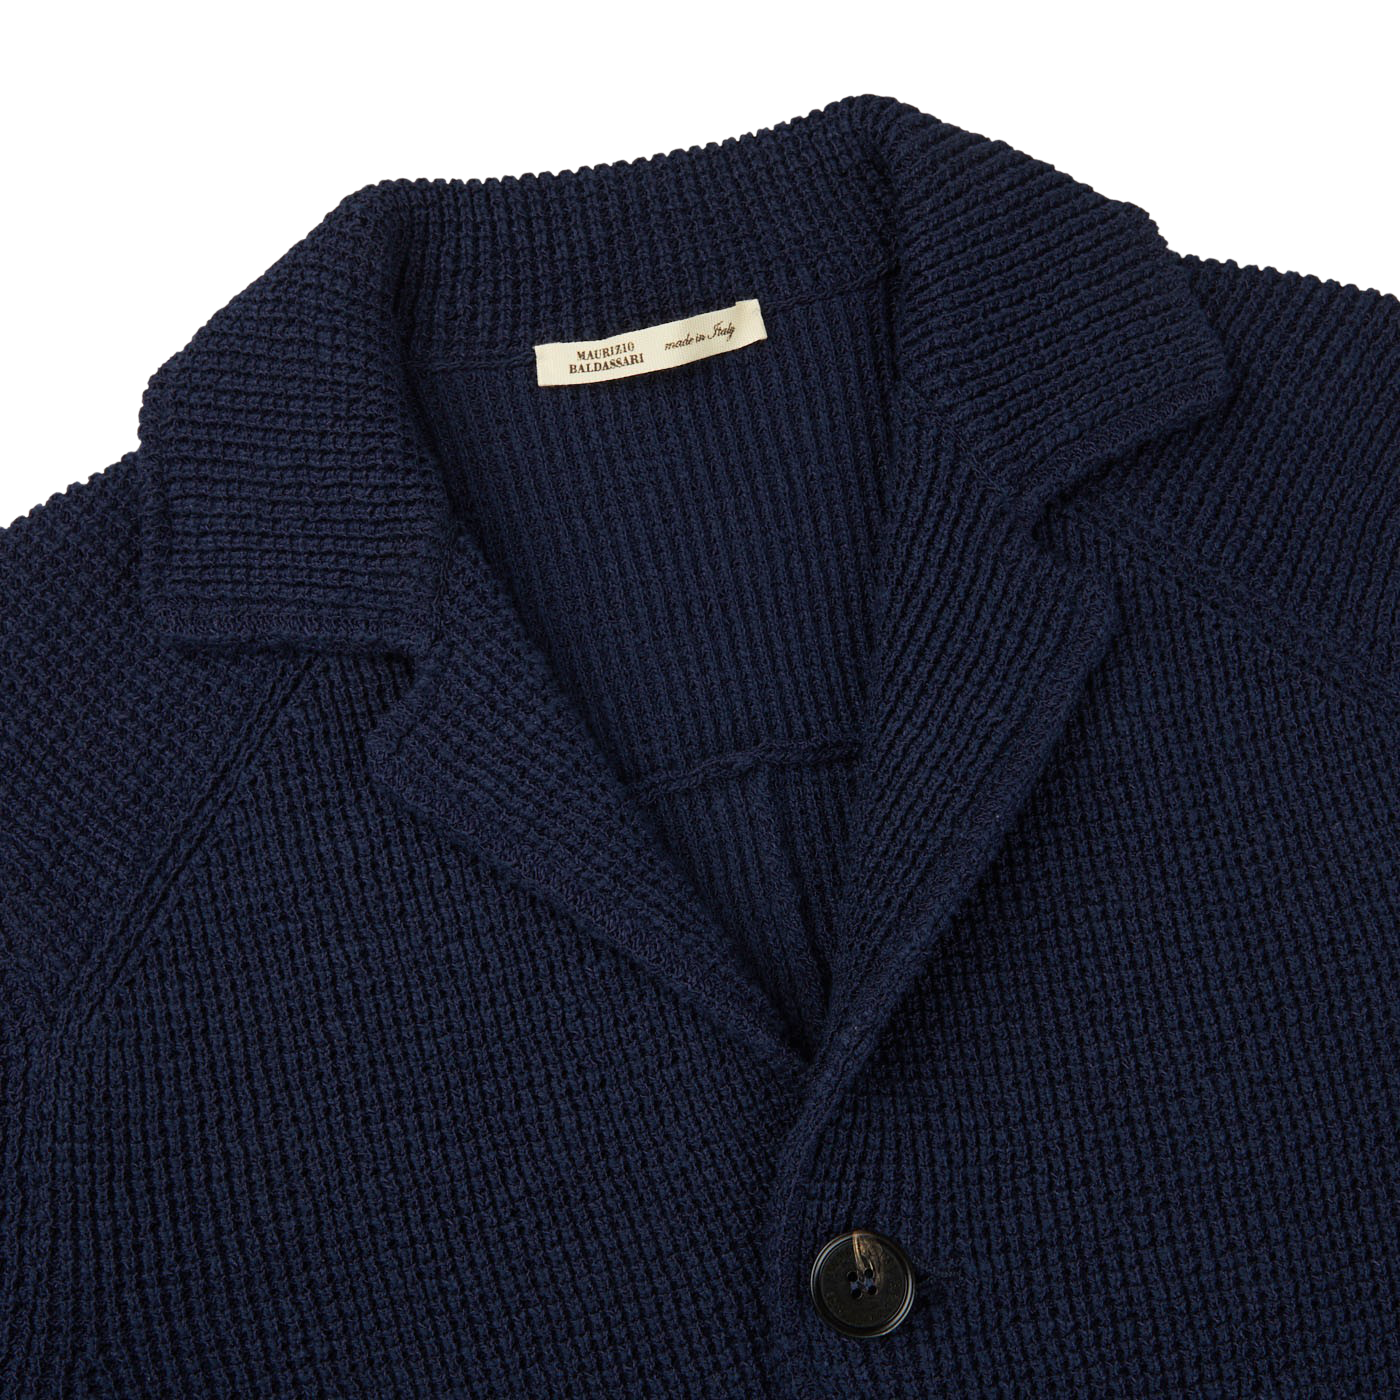 Maurizio Baldassari Navy Blue Cotton Summer Brenta Jacket Collar